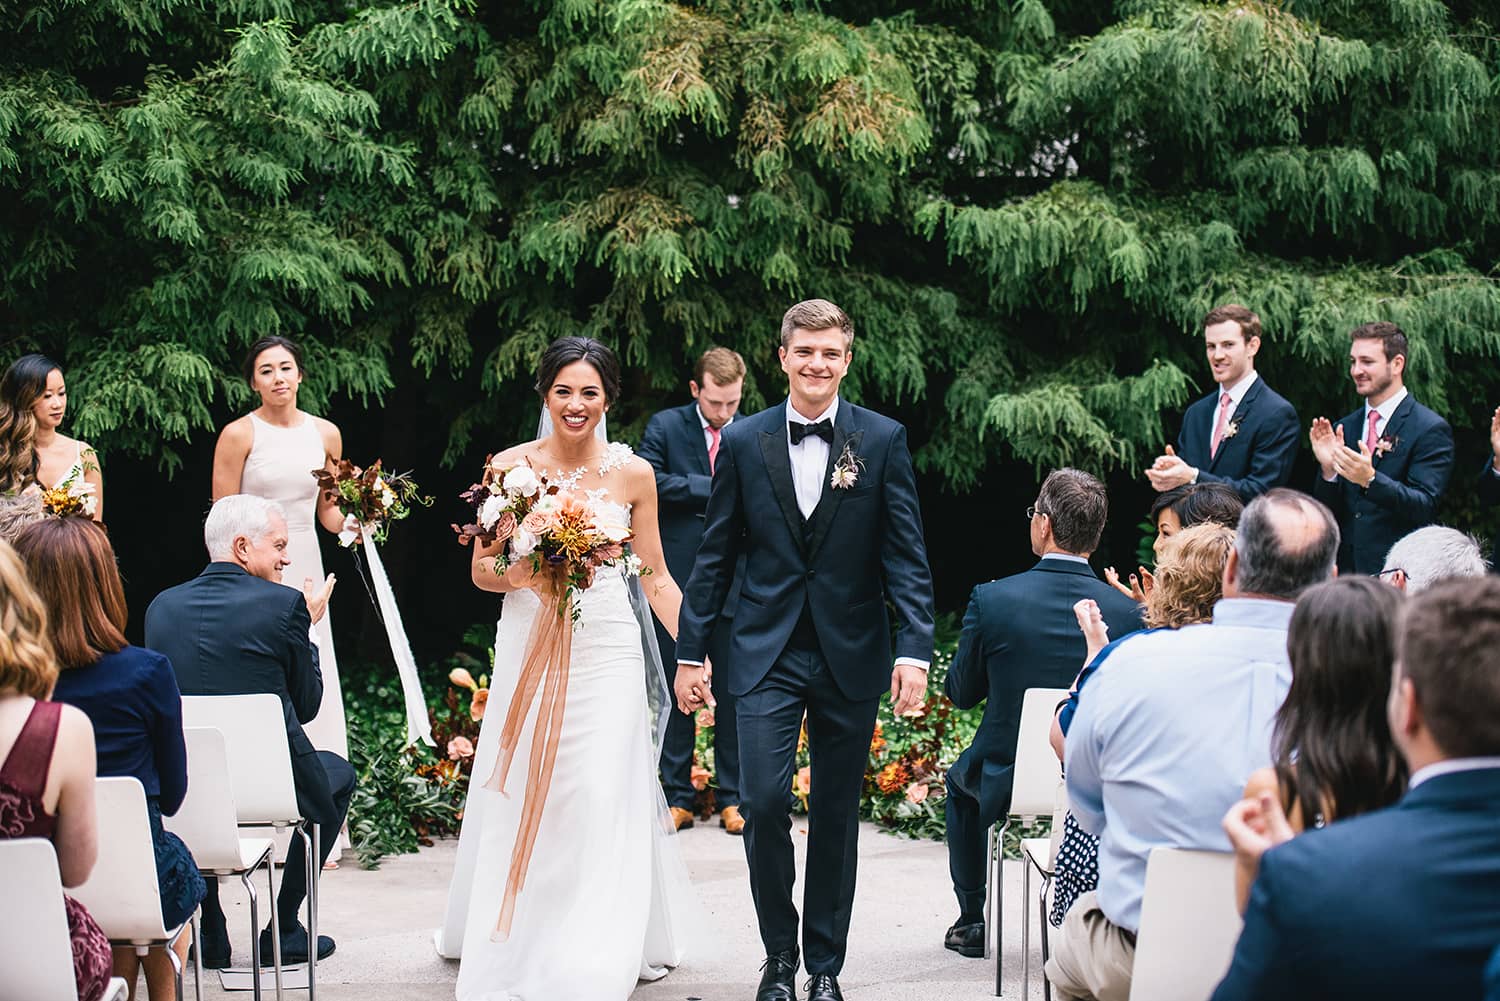 Portland-wedding-florists-bride-groom-married-flowers.jpg